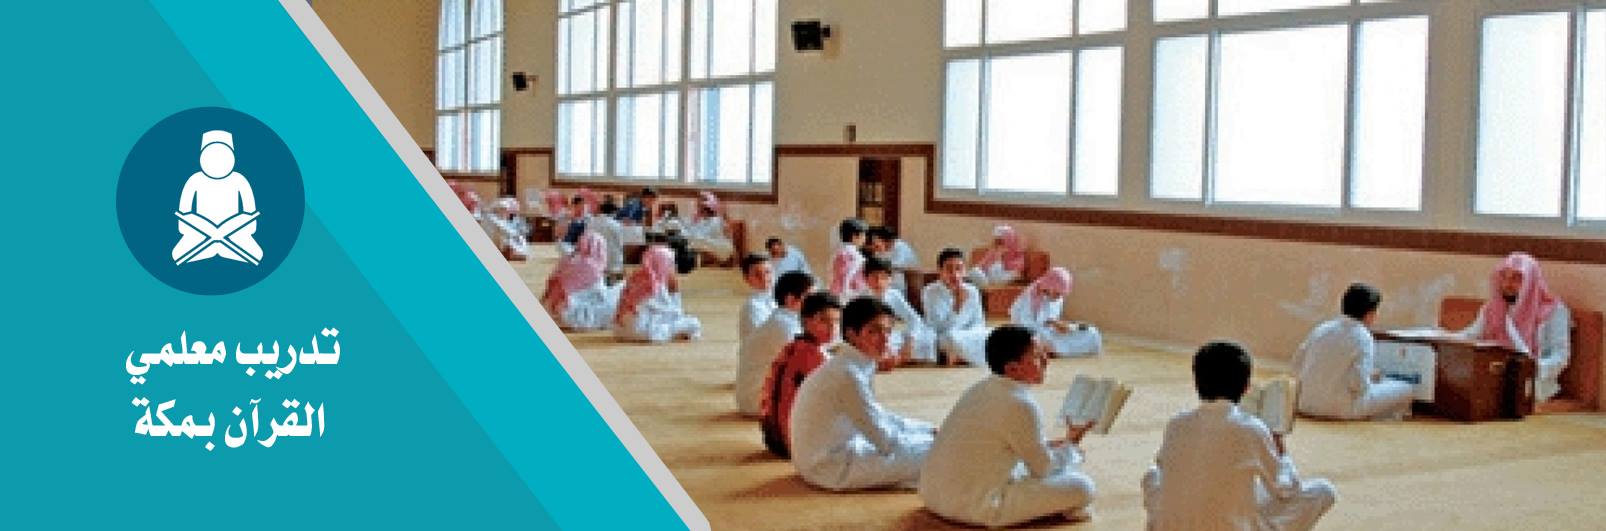 أهم المشاريع : تدريب معلمي القرآن